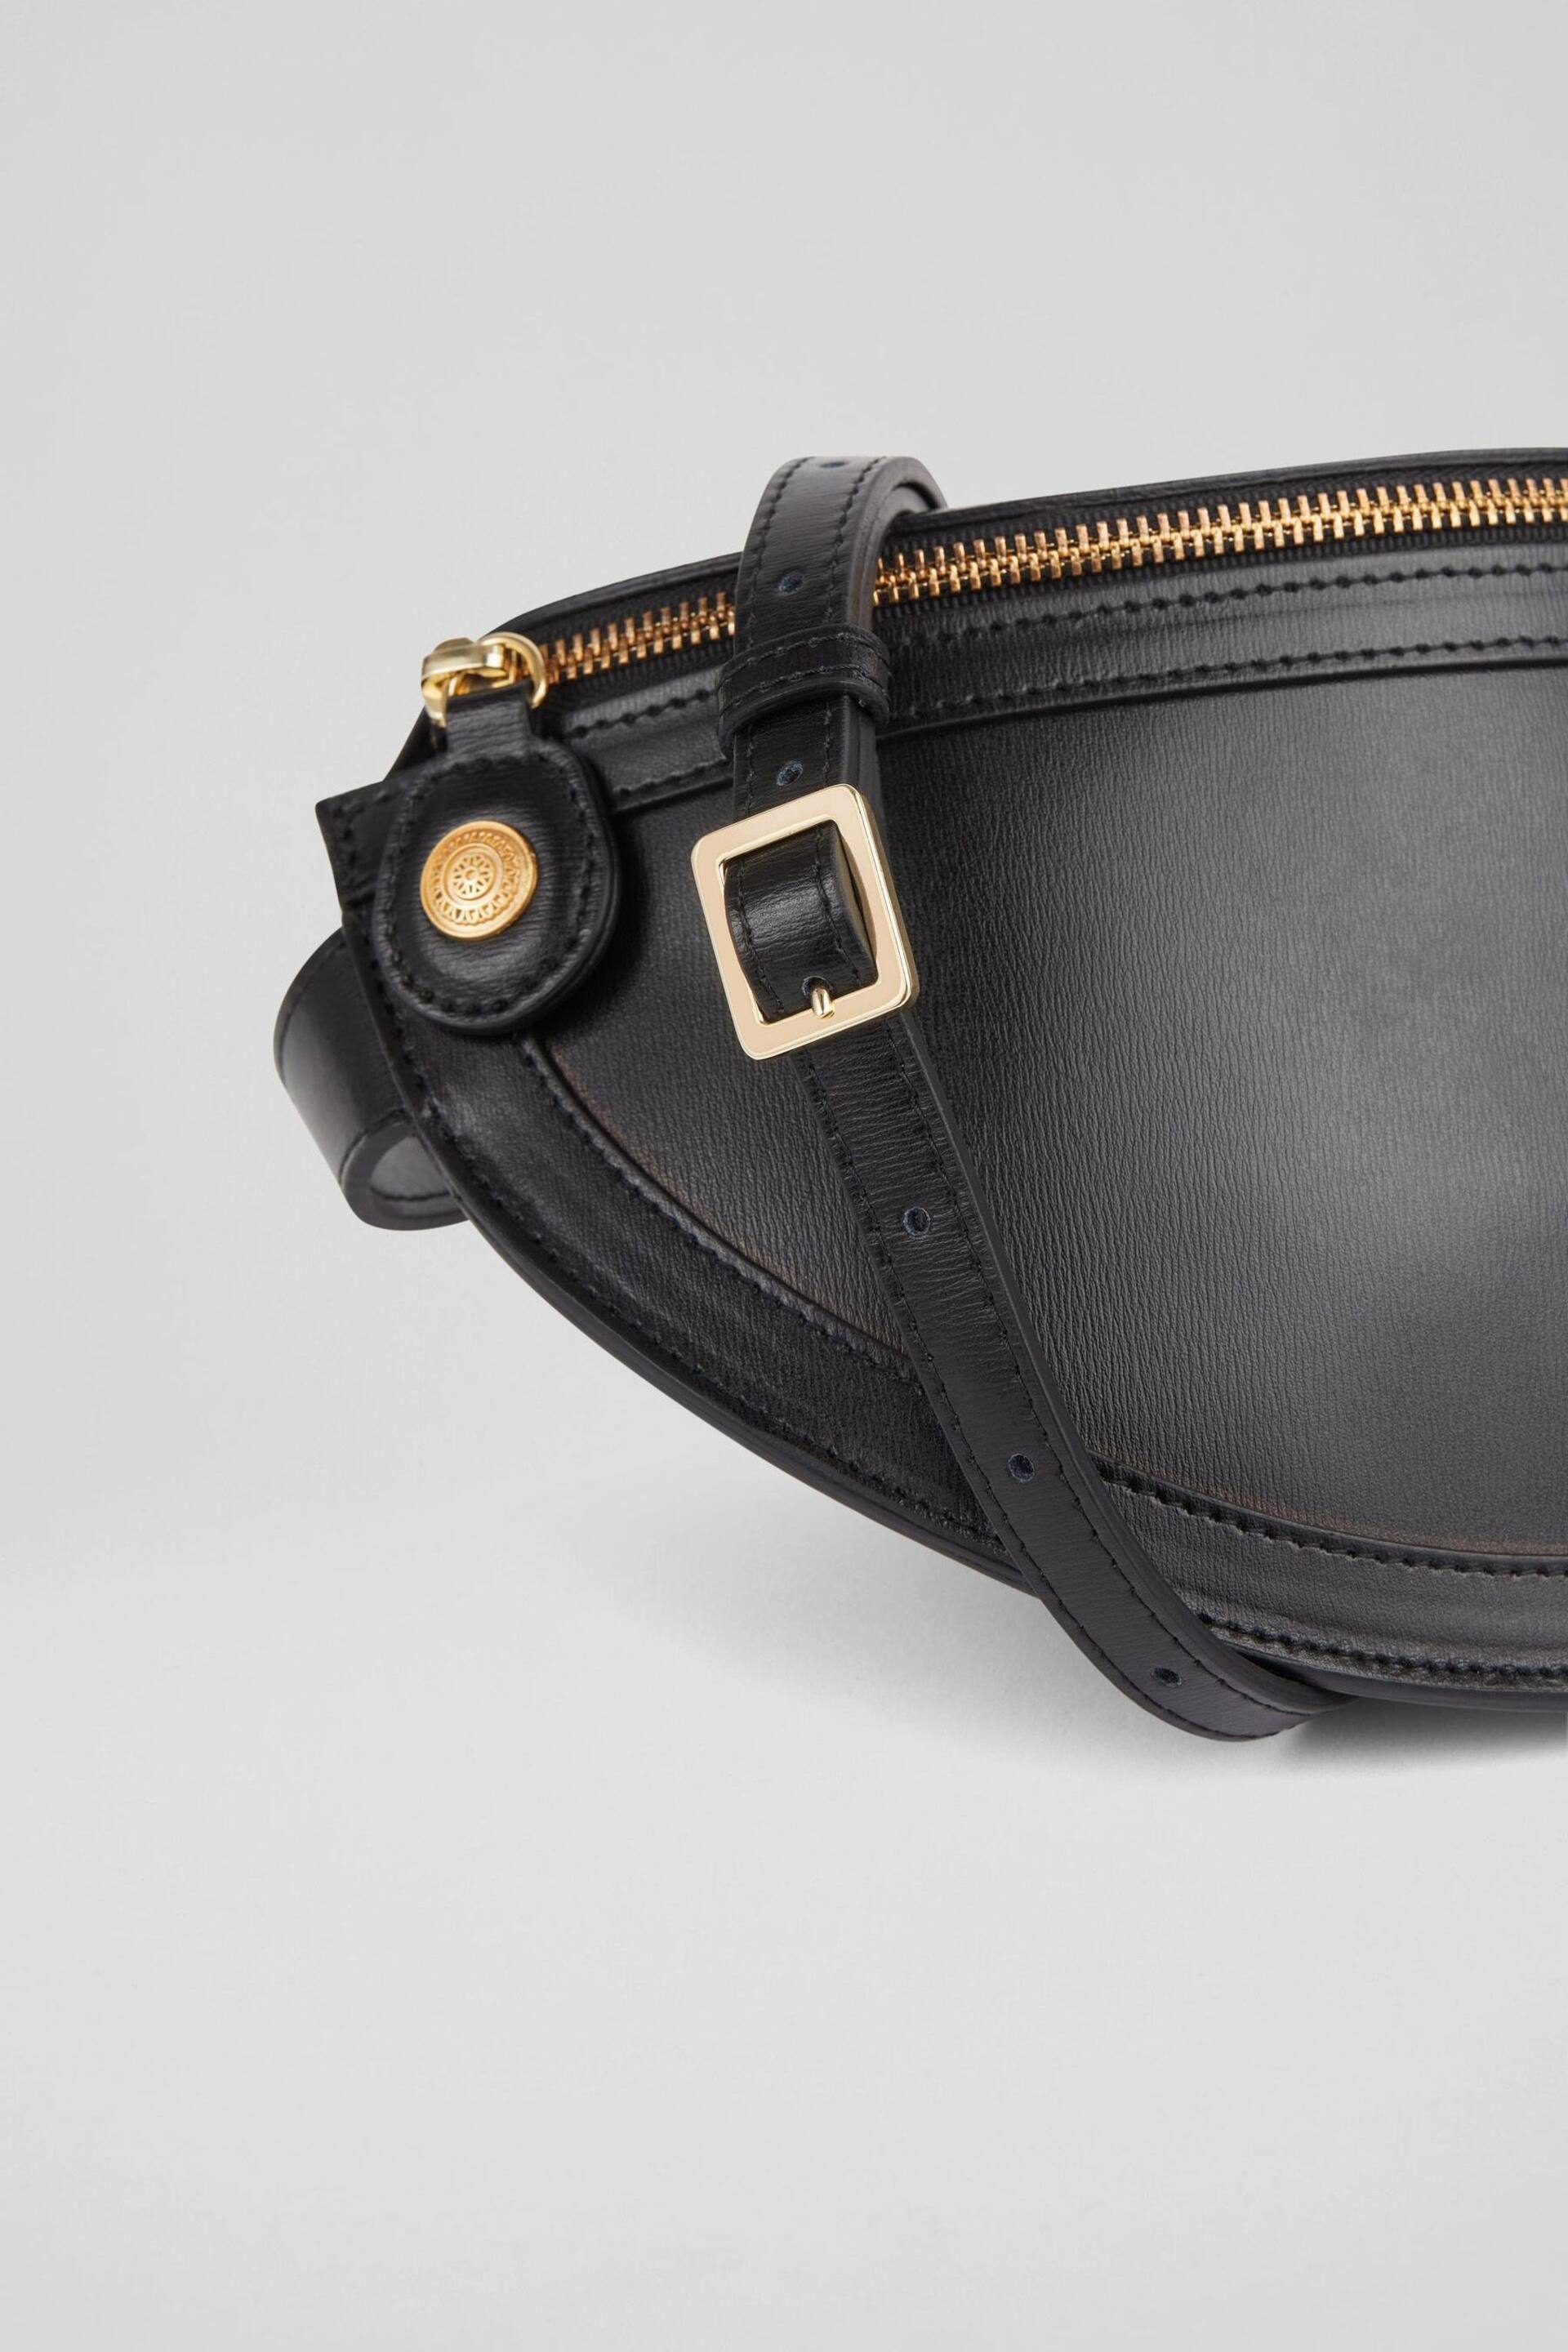 LK Bennett Greta Leather Cross-Body Bag - Image 4 of 6